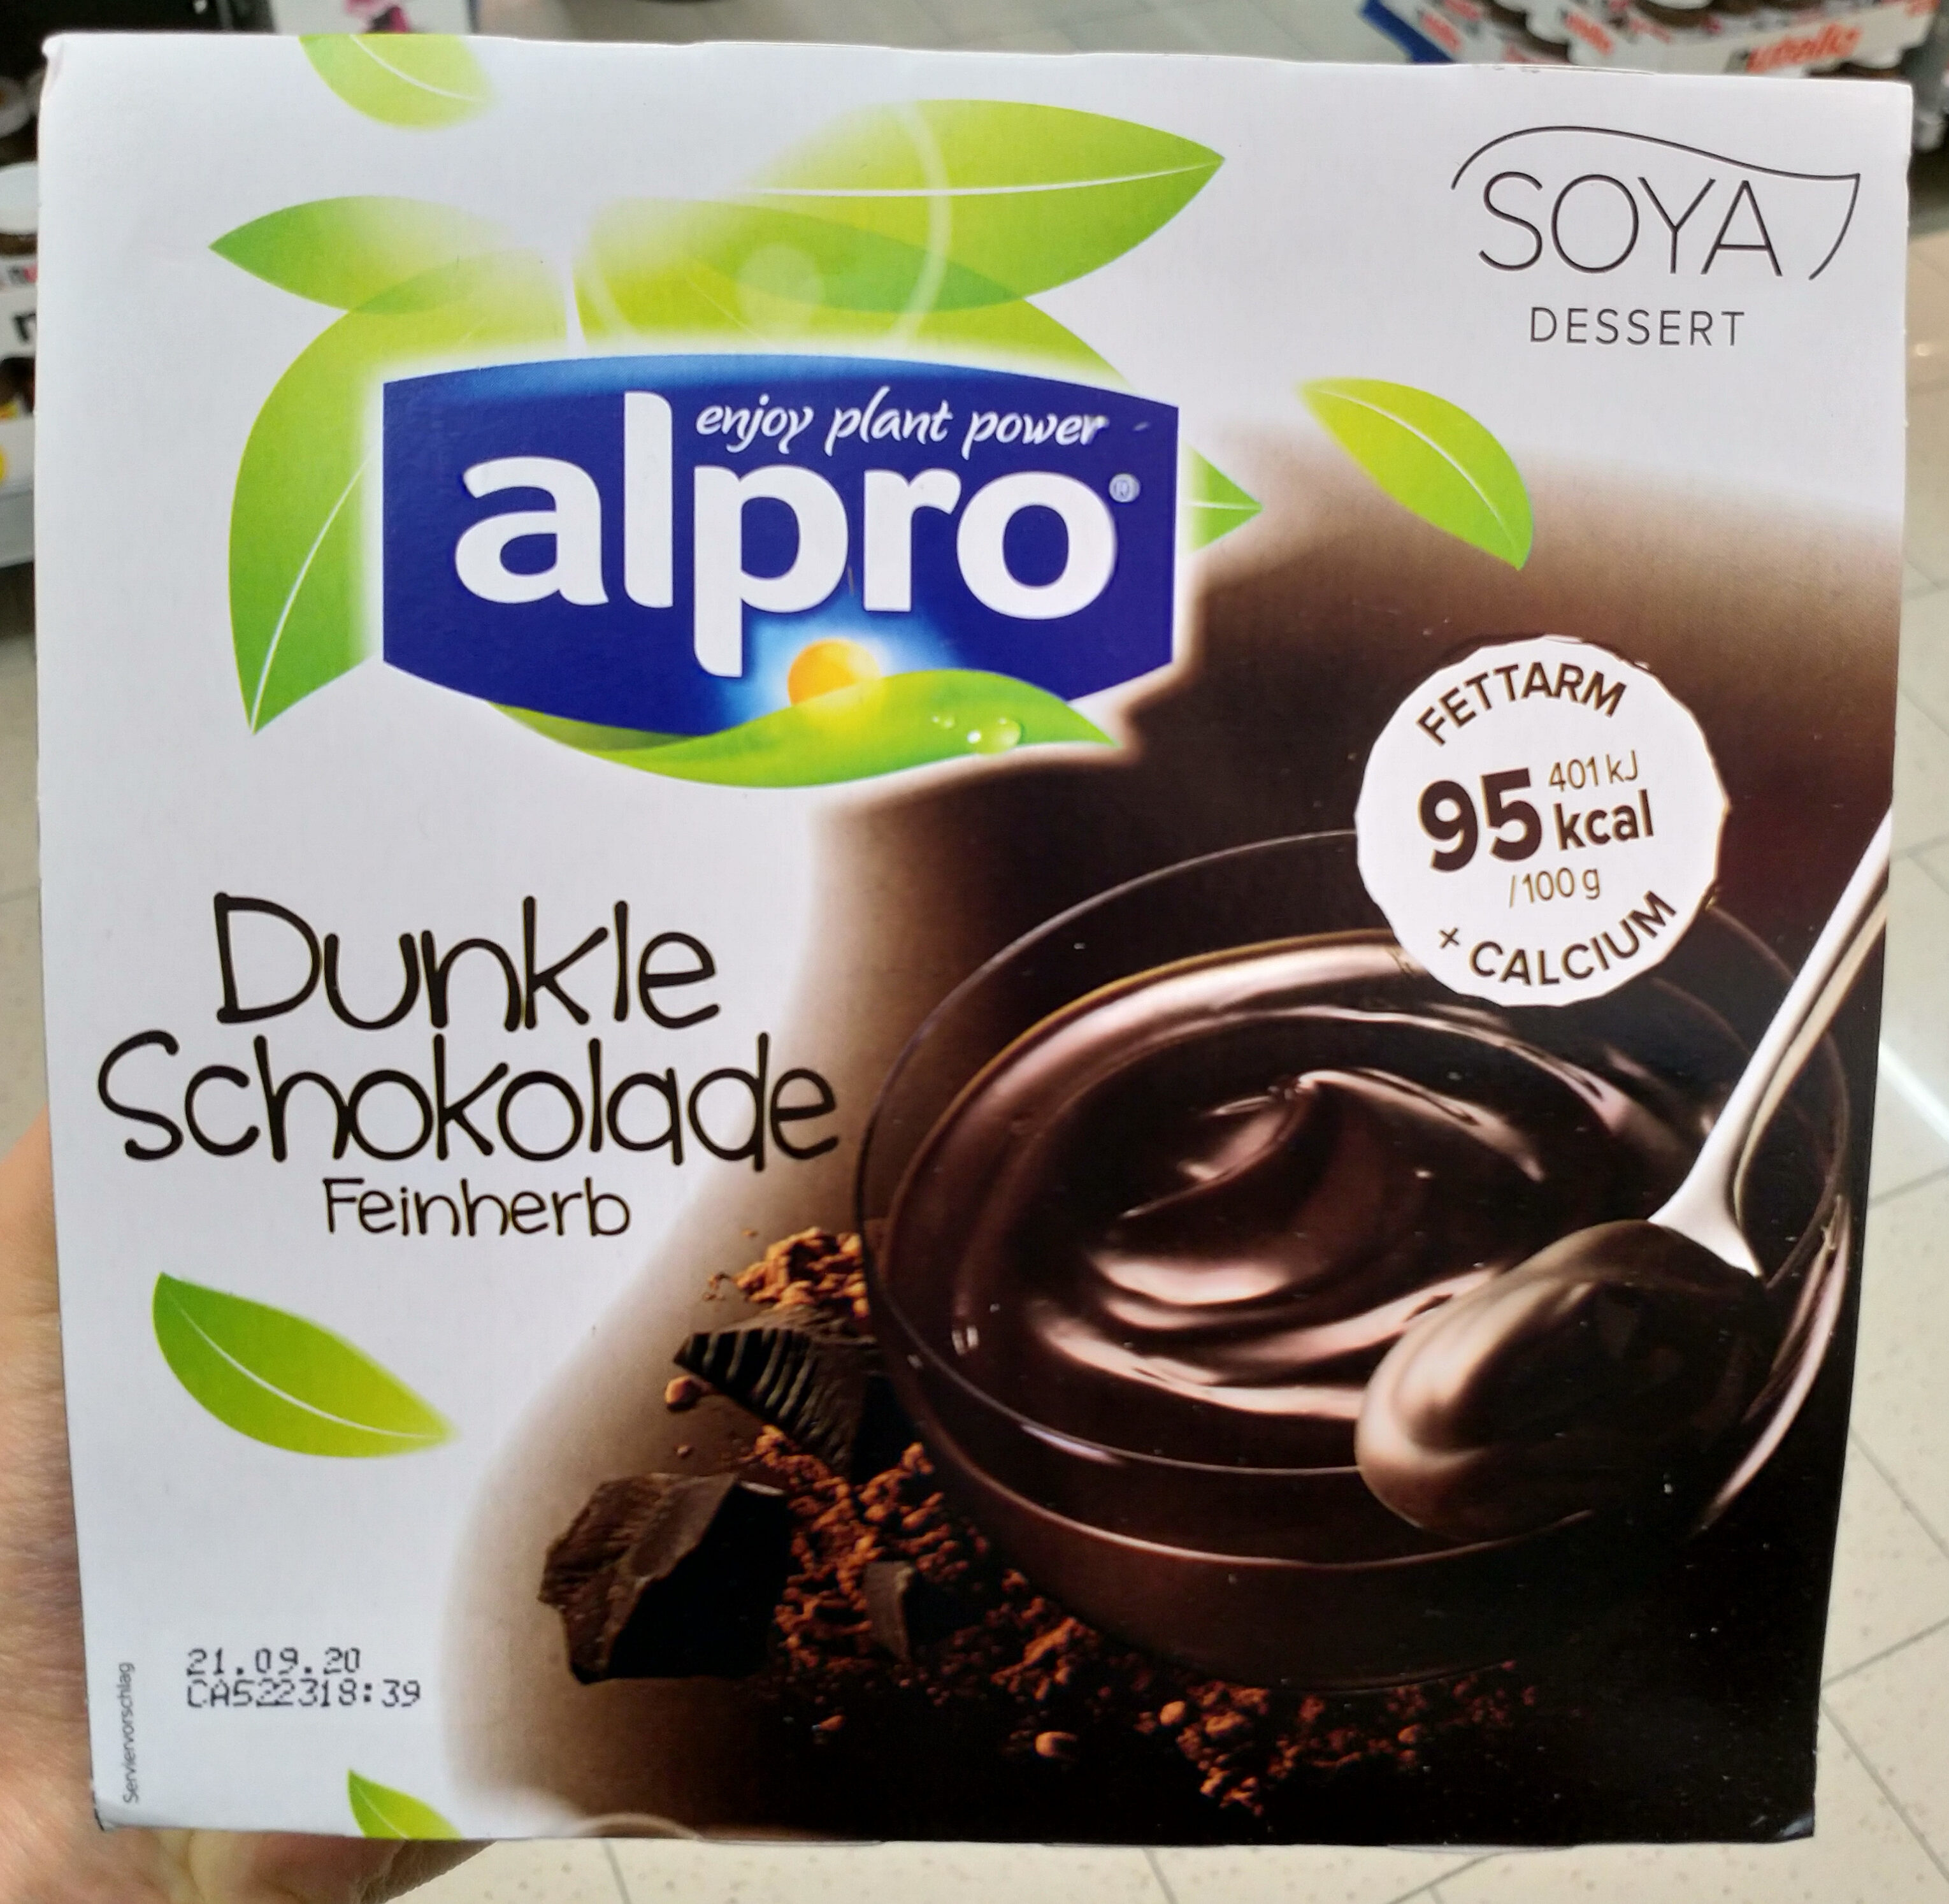 Soya Dessert dunkel Schokolade - Produkt - de